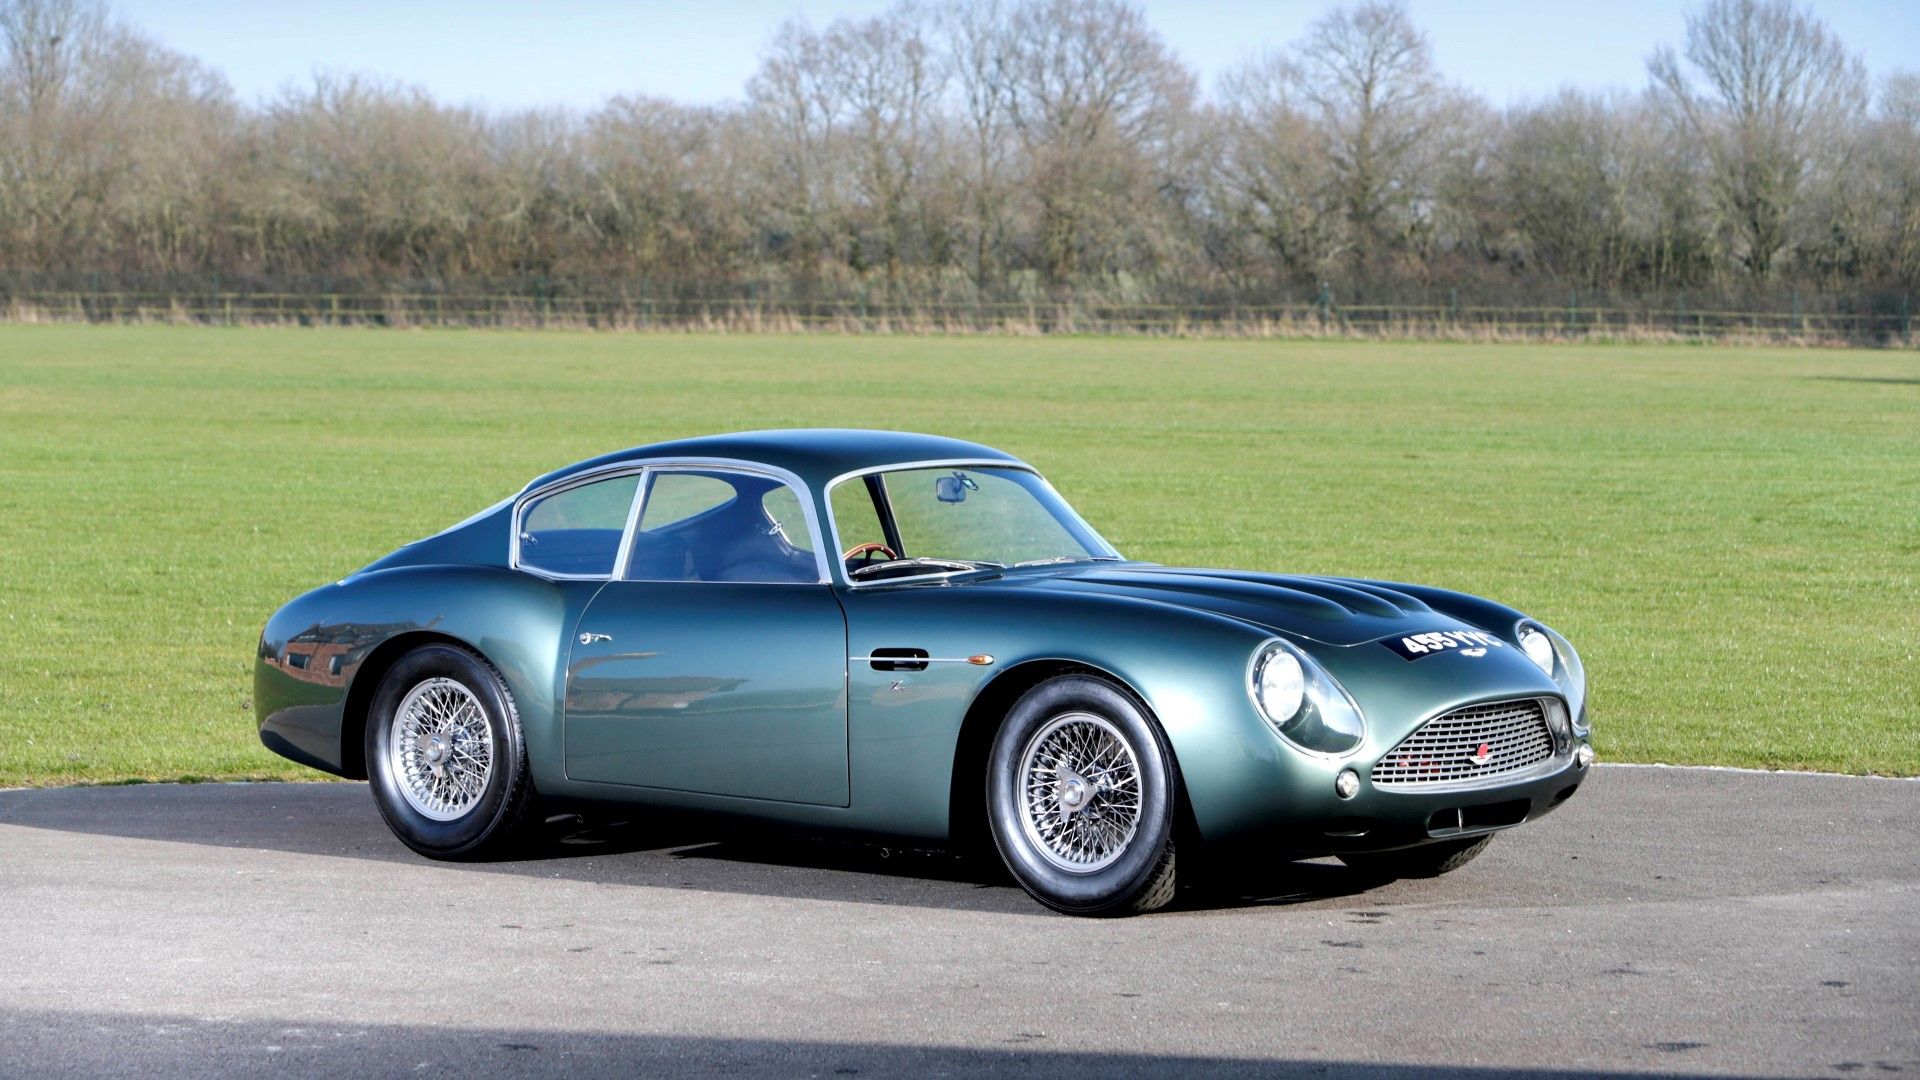 Fondos de pantalla - Aston Martin Zagato